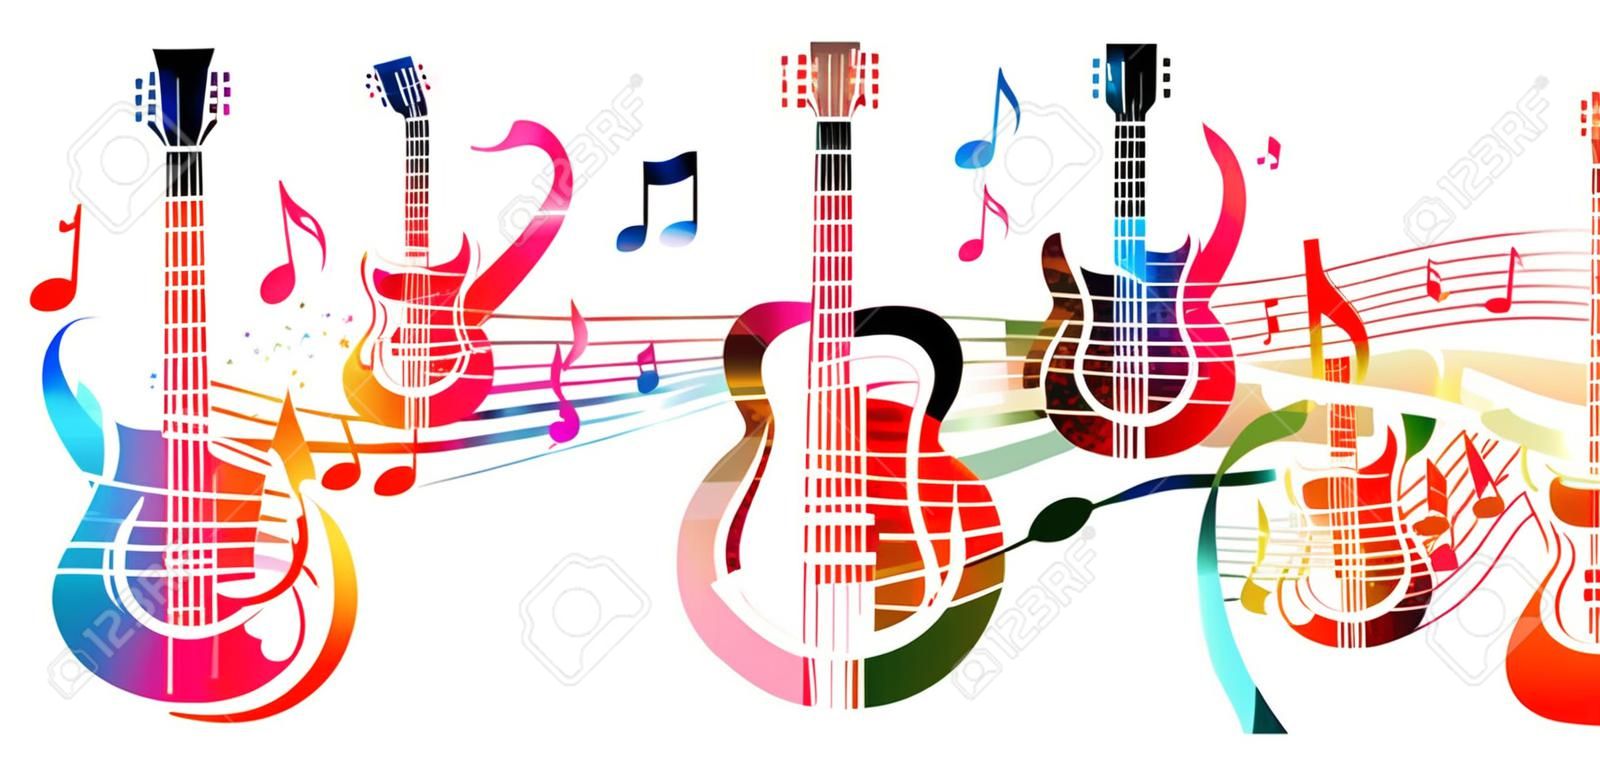 Kreatív zenei stílus sablon, vektor, Ábra, színes gitár zene személyzet és megjegyzi, hangszerek háttérben. Design poszter, prospektus, transzparens, koncert, fesztivál és zenebolt